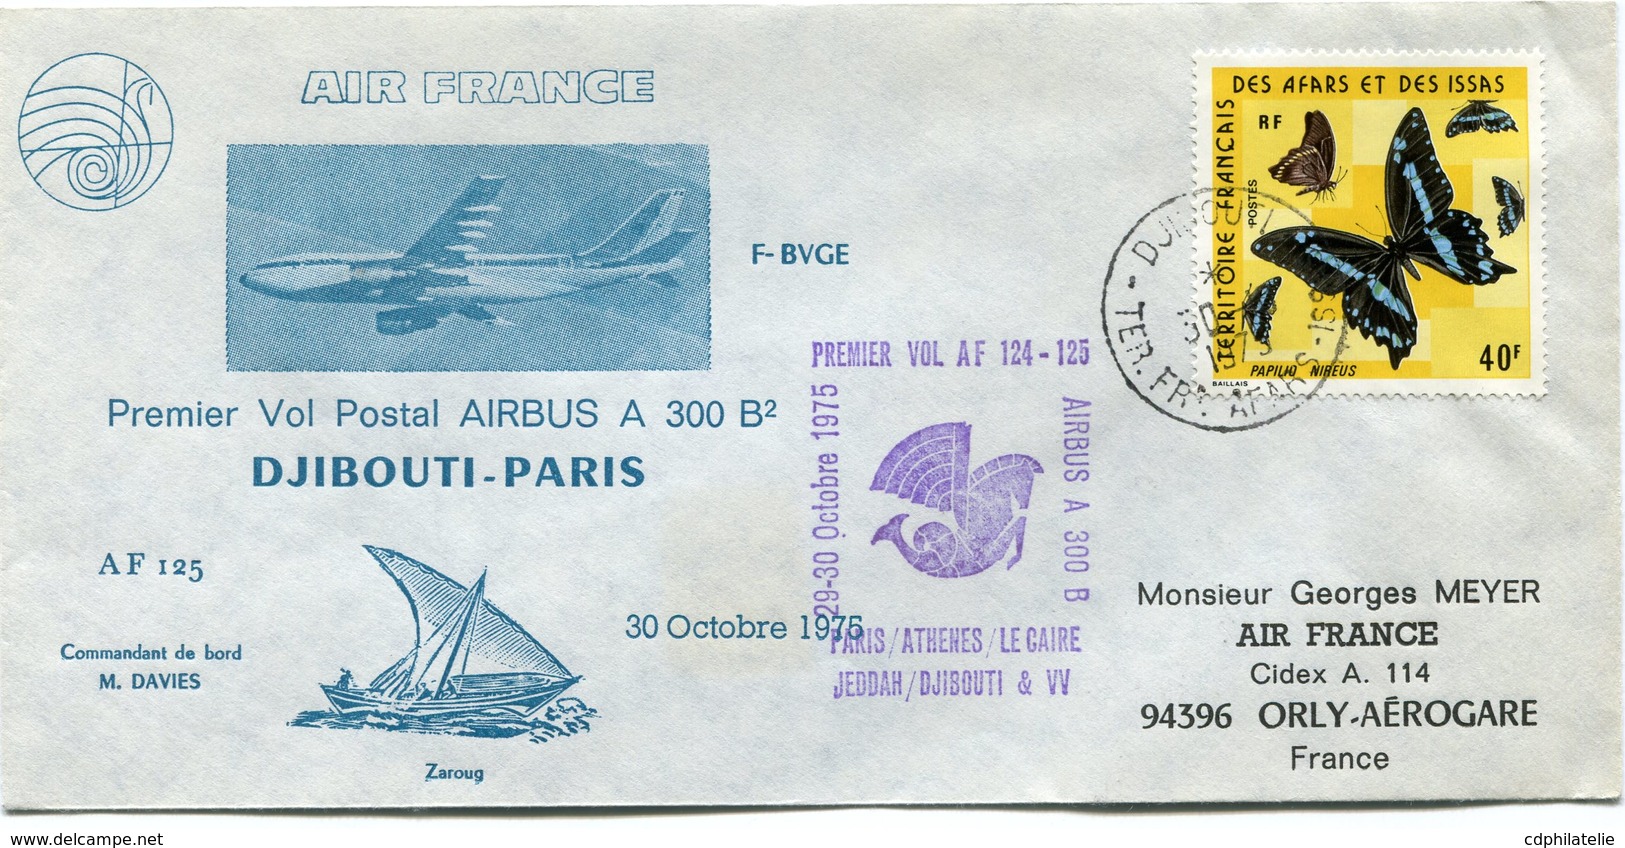 AFARS ET ISSAS ENVELOPPE PREMIER VOL POSTAL AIRBUS A 300 B2 DJIBOUTI - PARIS DU 30 OCTOBRE 1975 - Covers & Documents